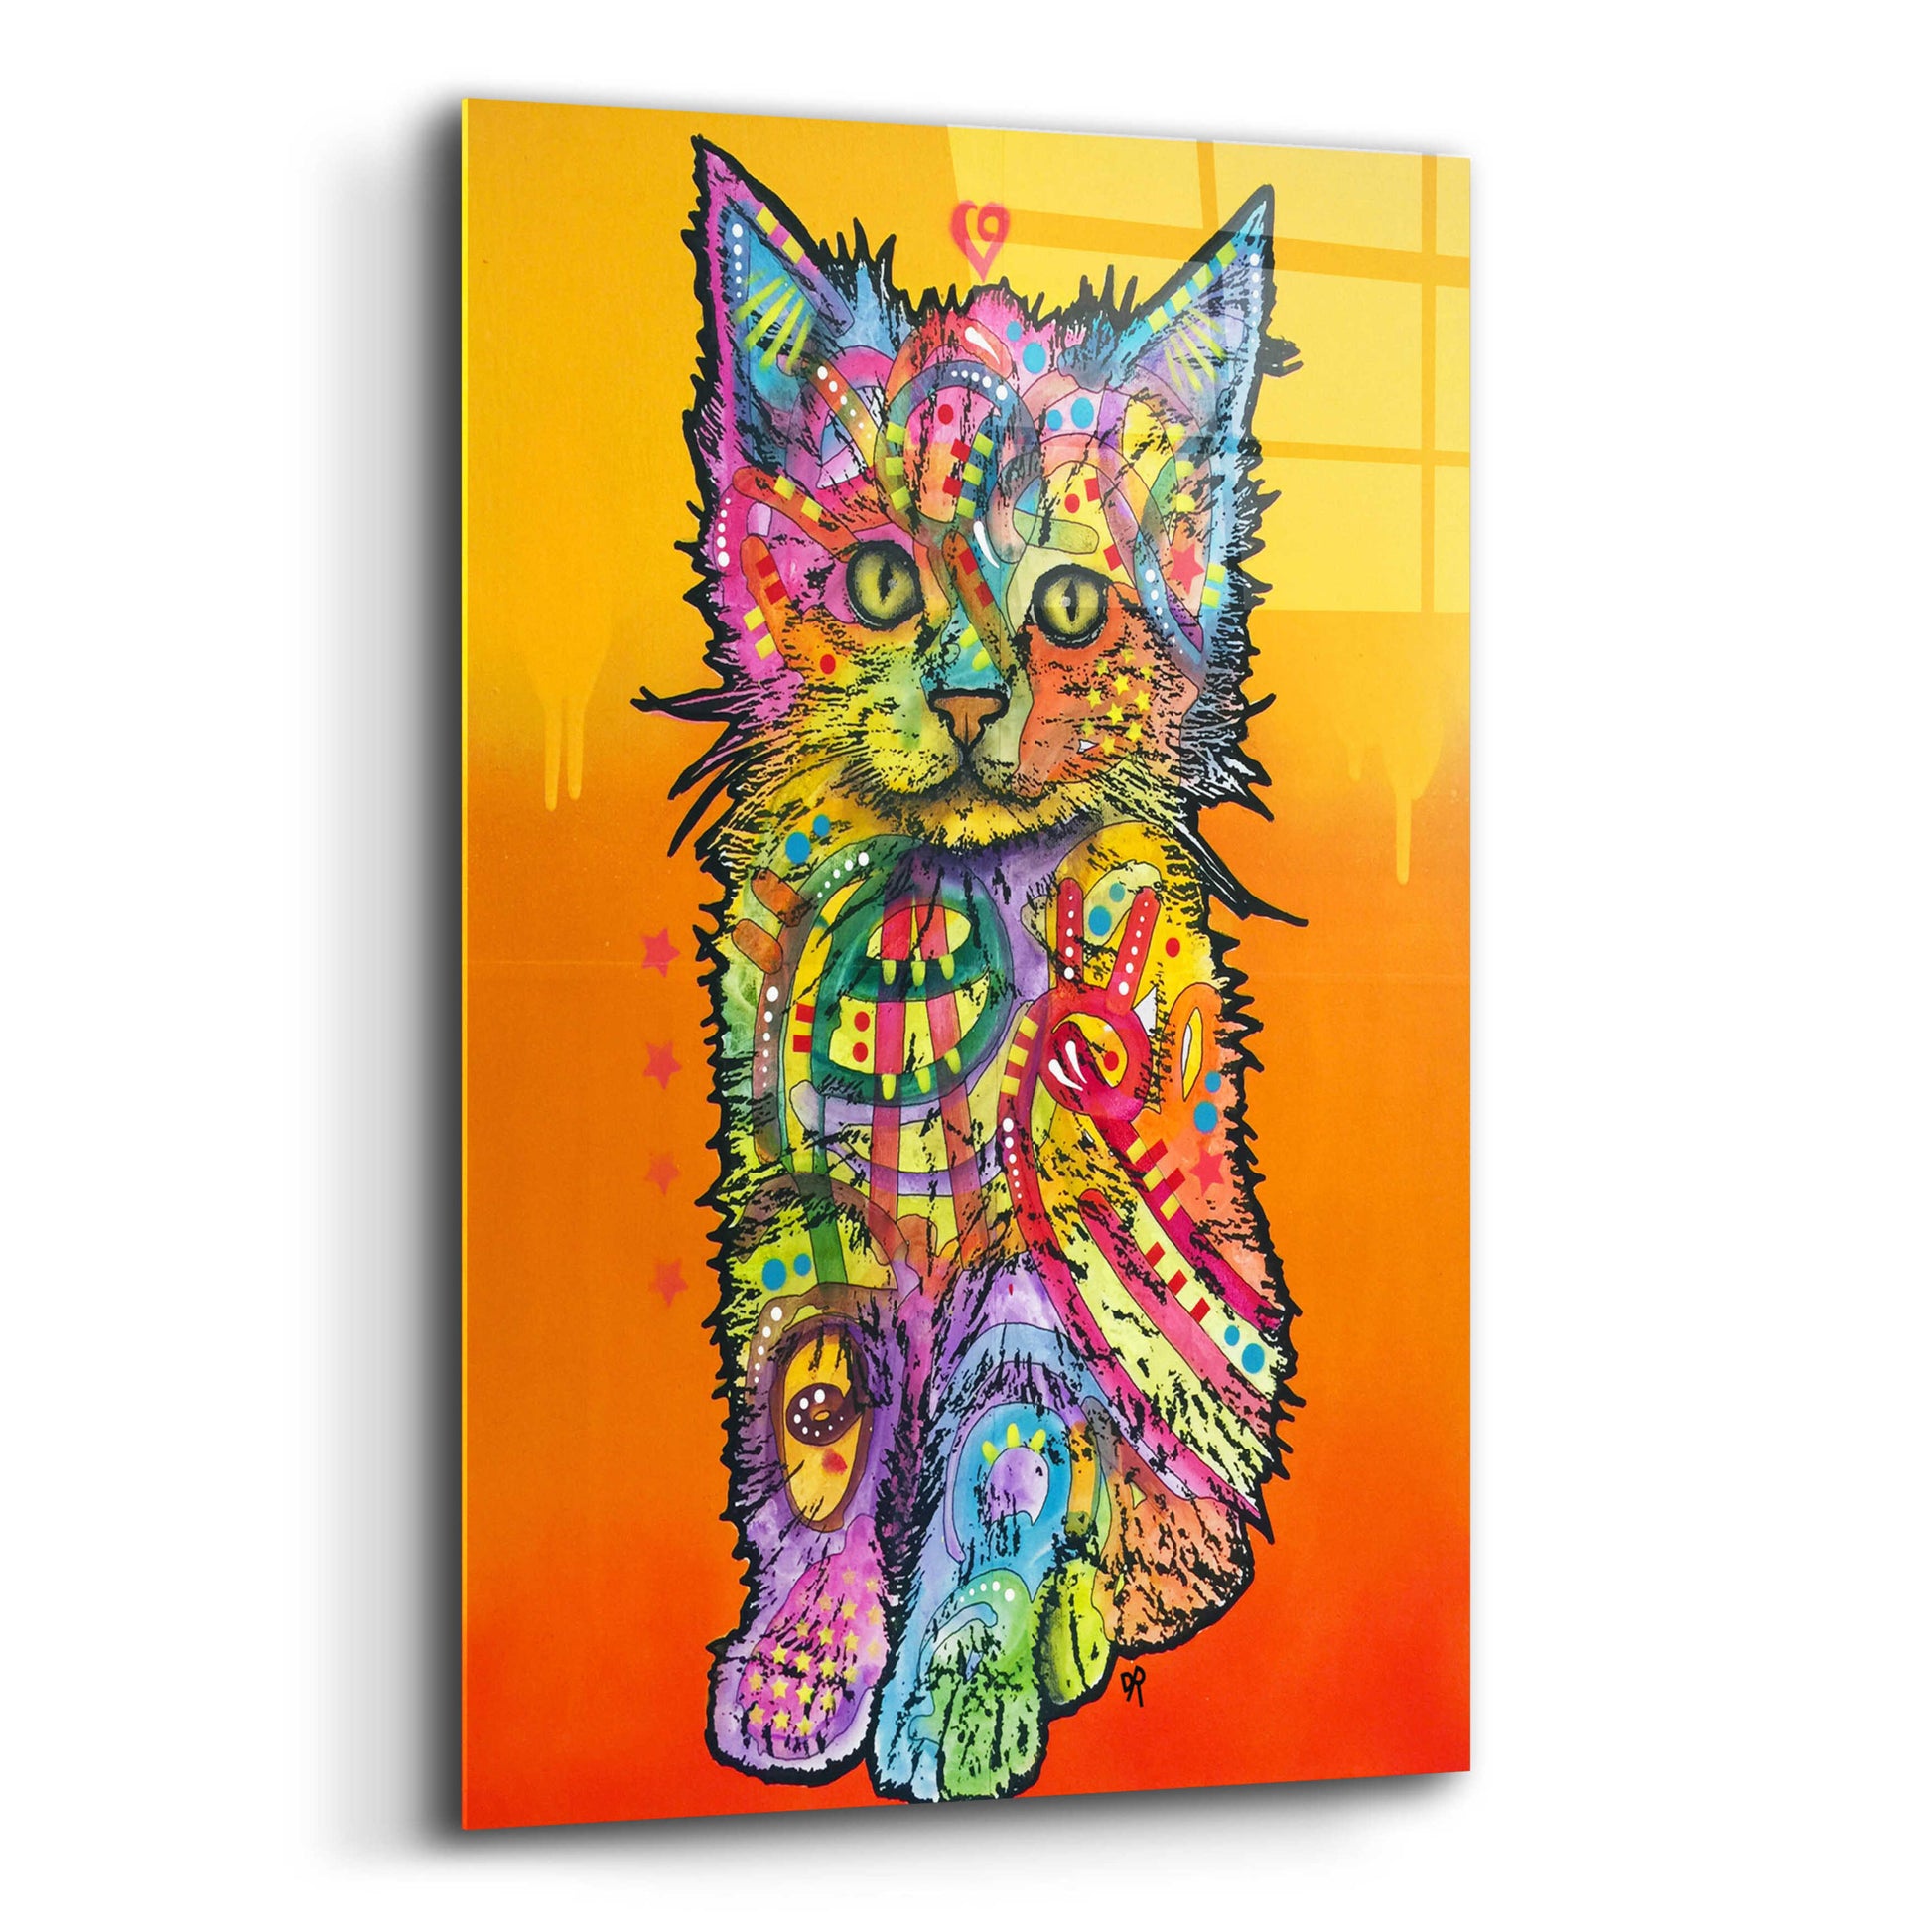 Epic Art 'Love Kitten' by Dean Russo, Acrylic Glass Wall Art,12x16